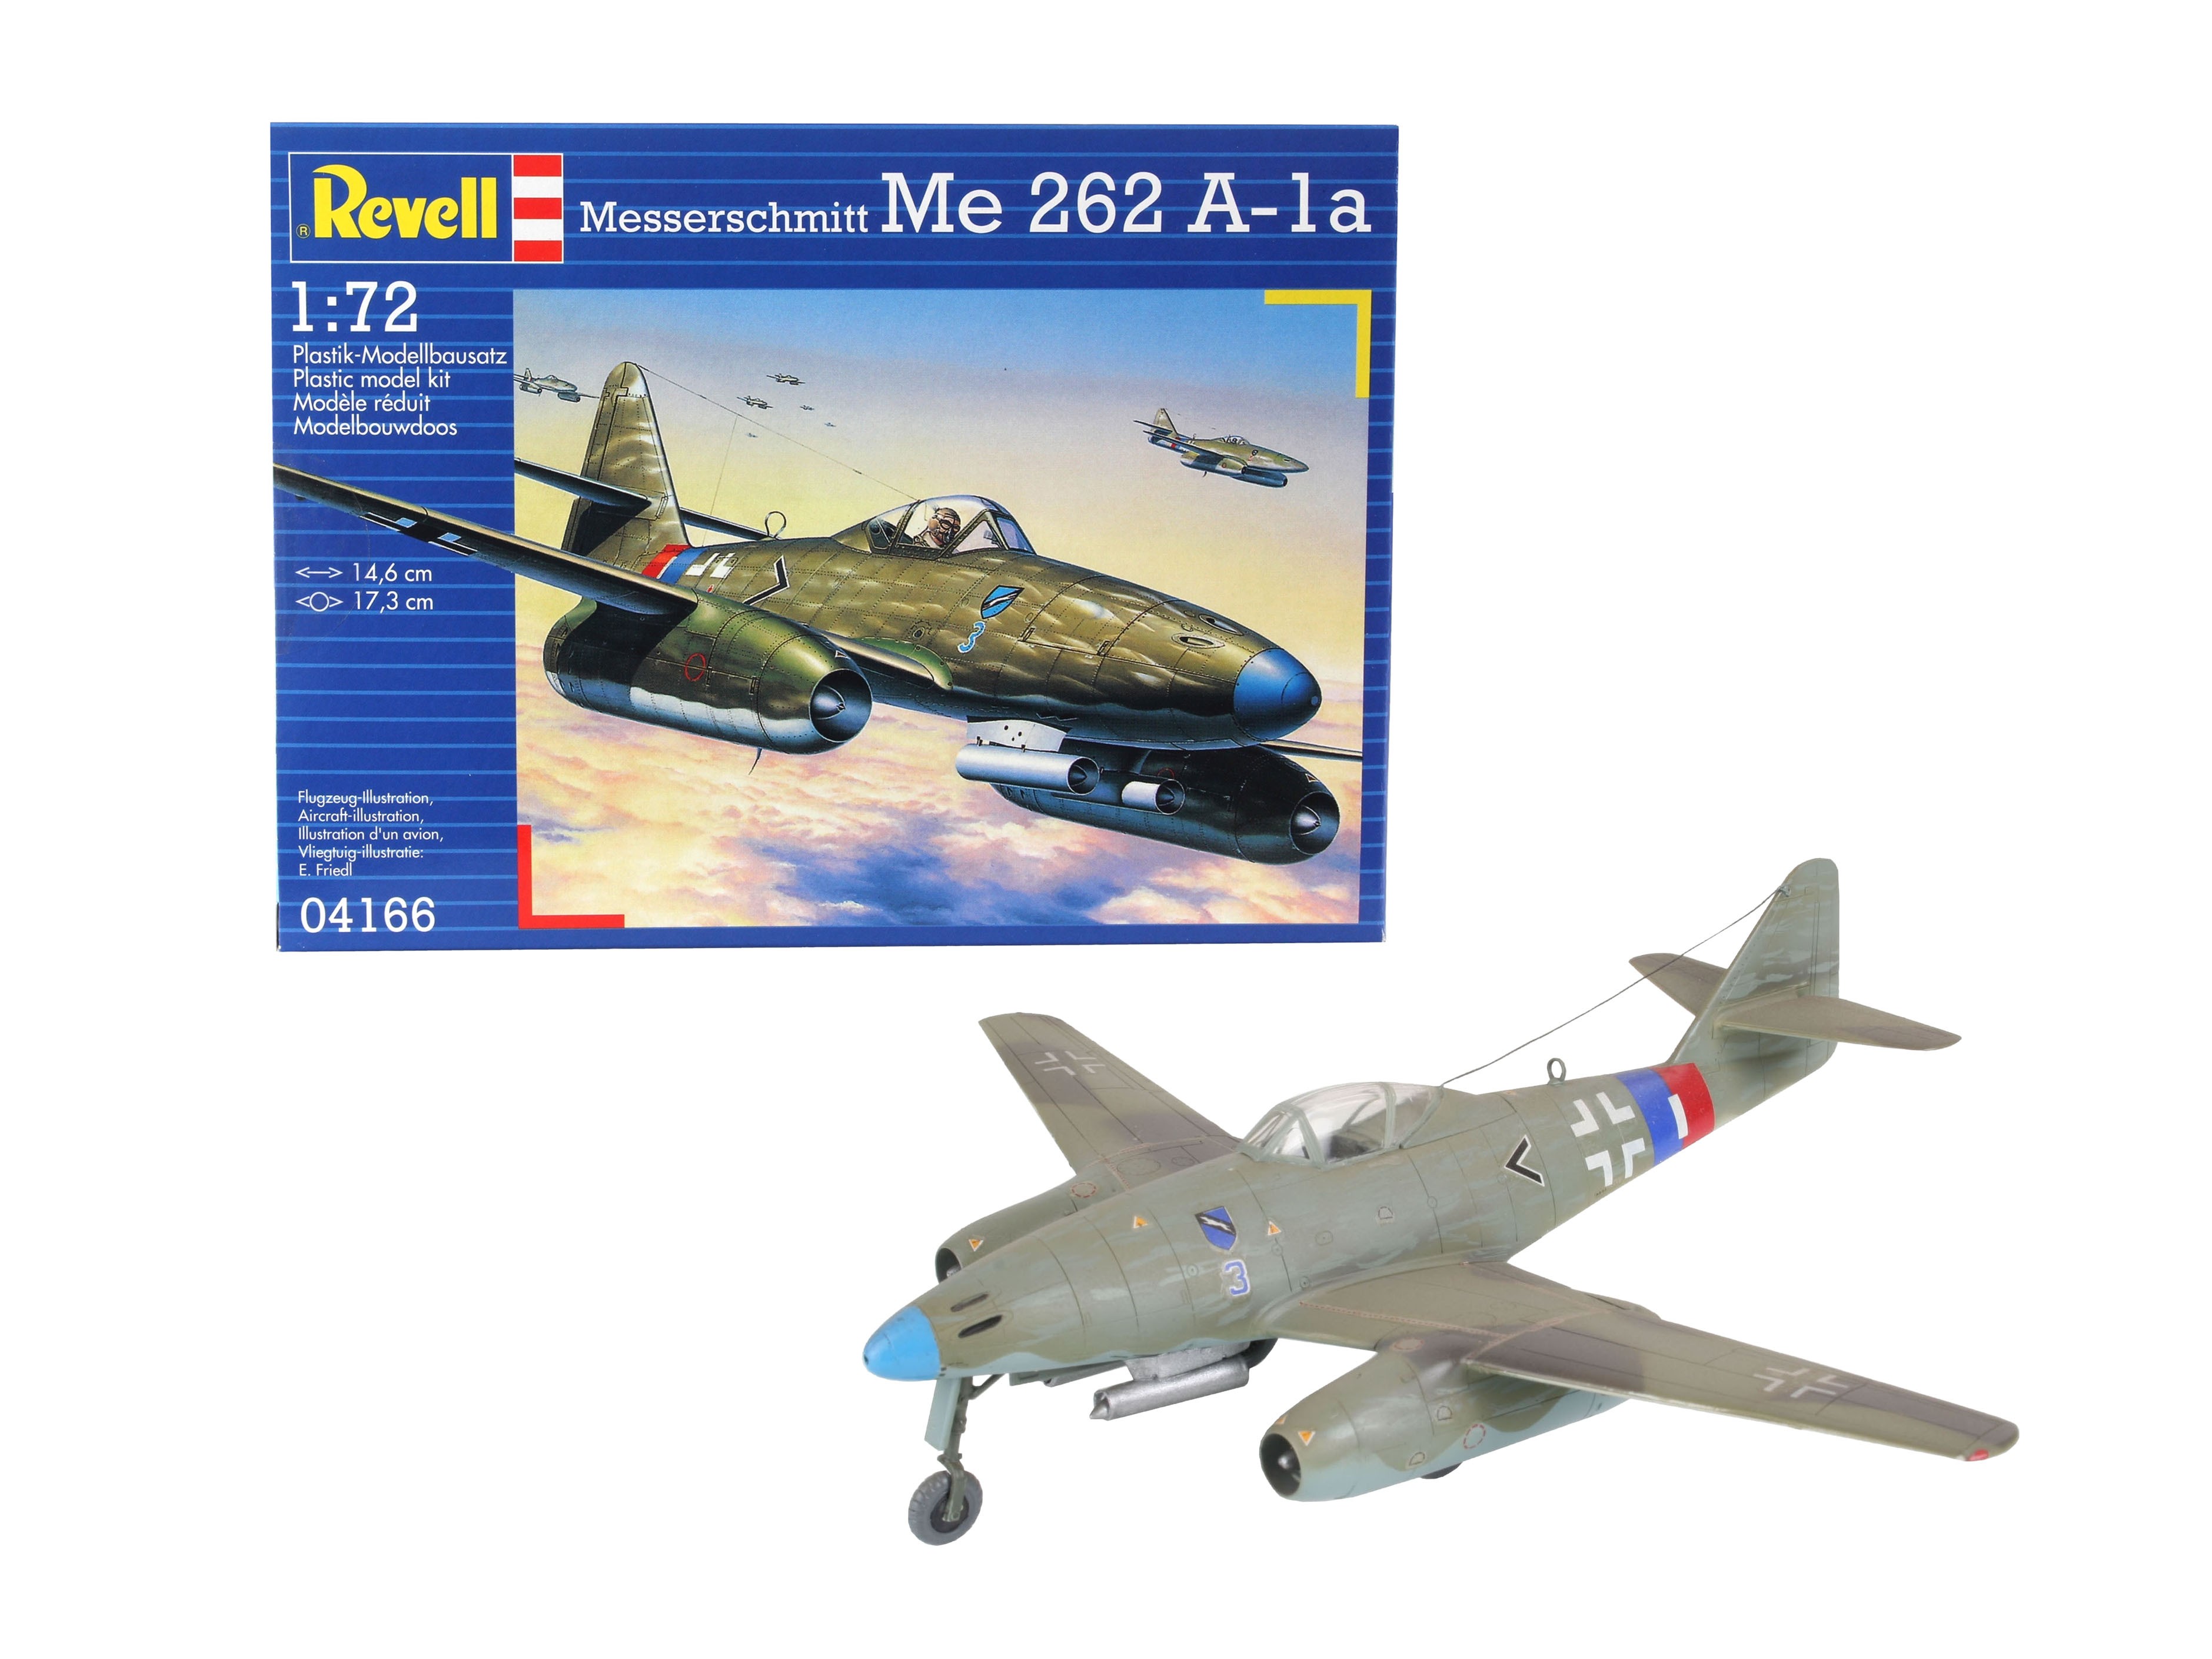 Revell 04166 Me 262 A-1a Messerschmitt 1:72